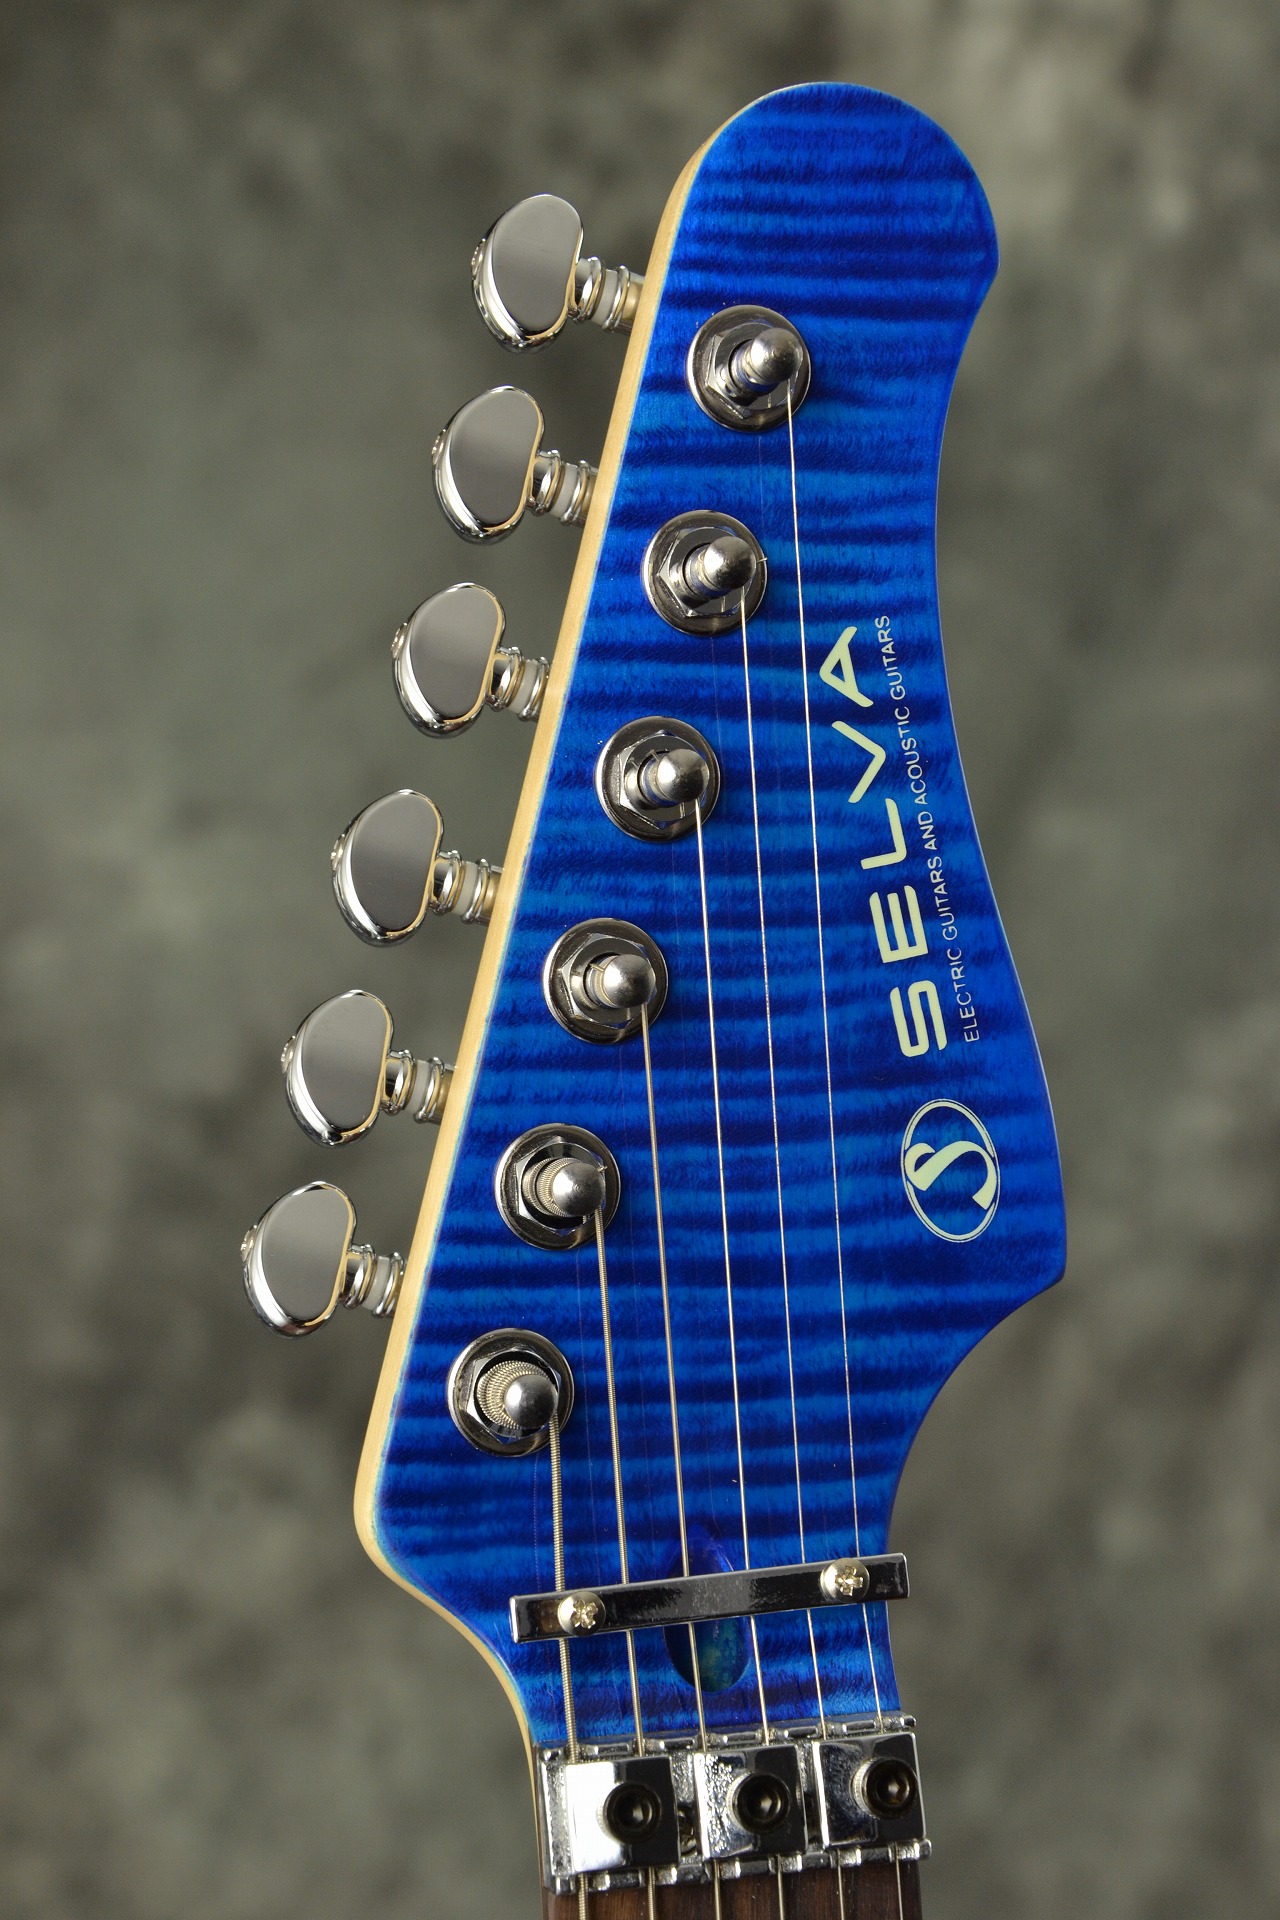 石橋楽器Newオリジナルブランド SELVA SST-600 STYLE4 ついに登場！！ – GuitarQuest イシバシ楽器が送る楽器